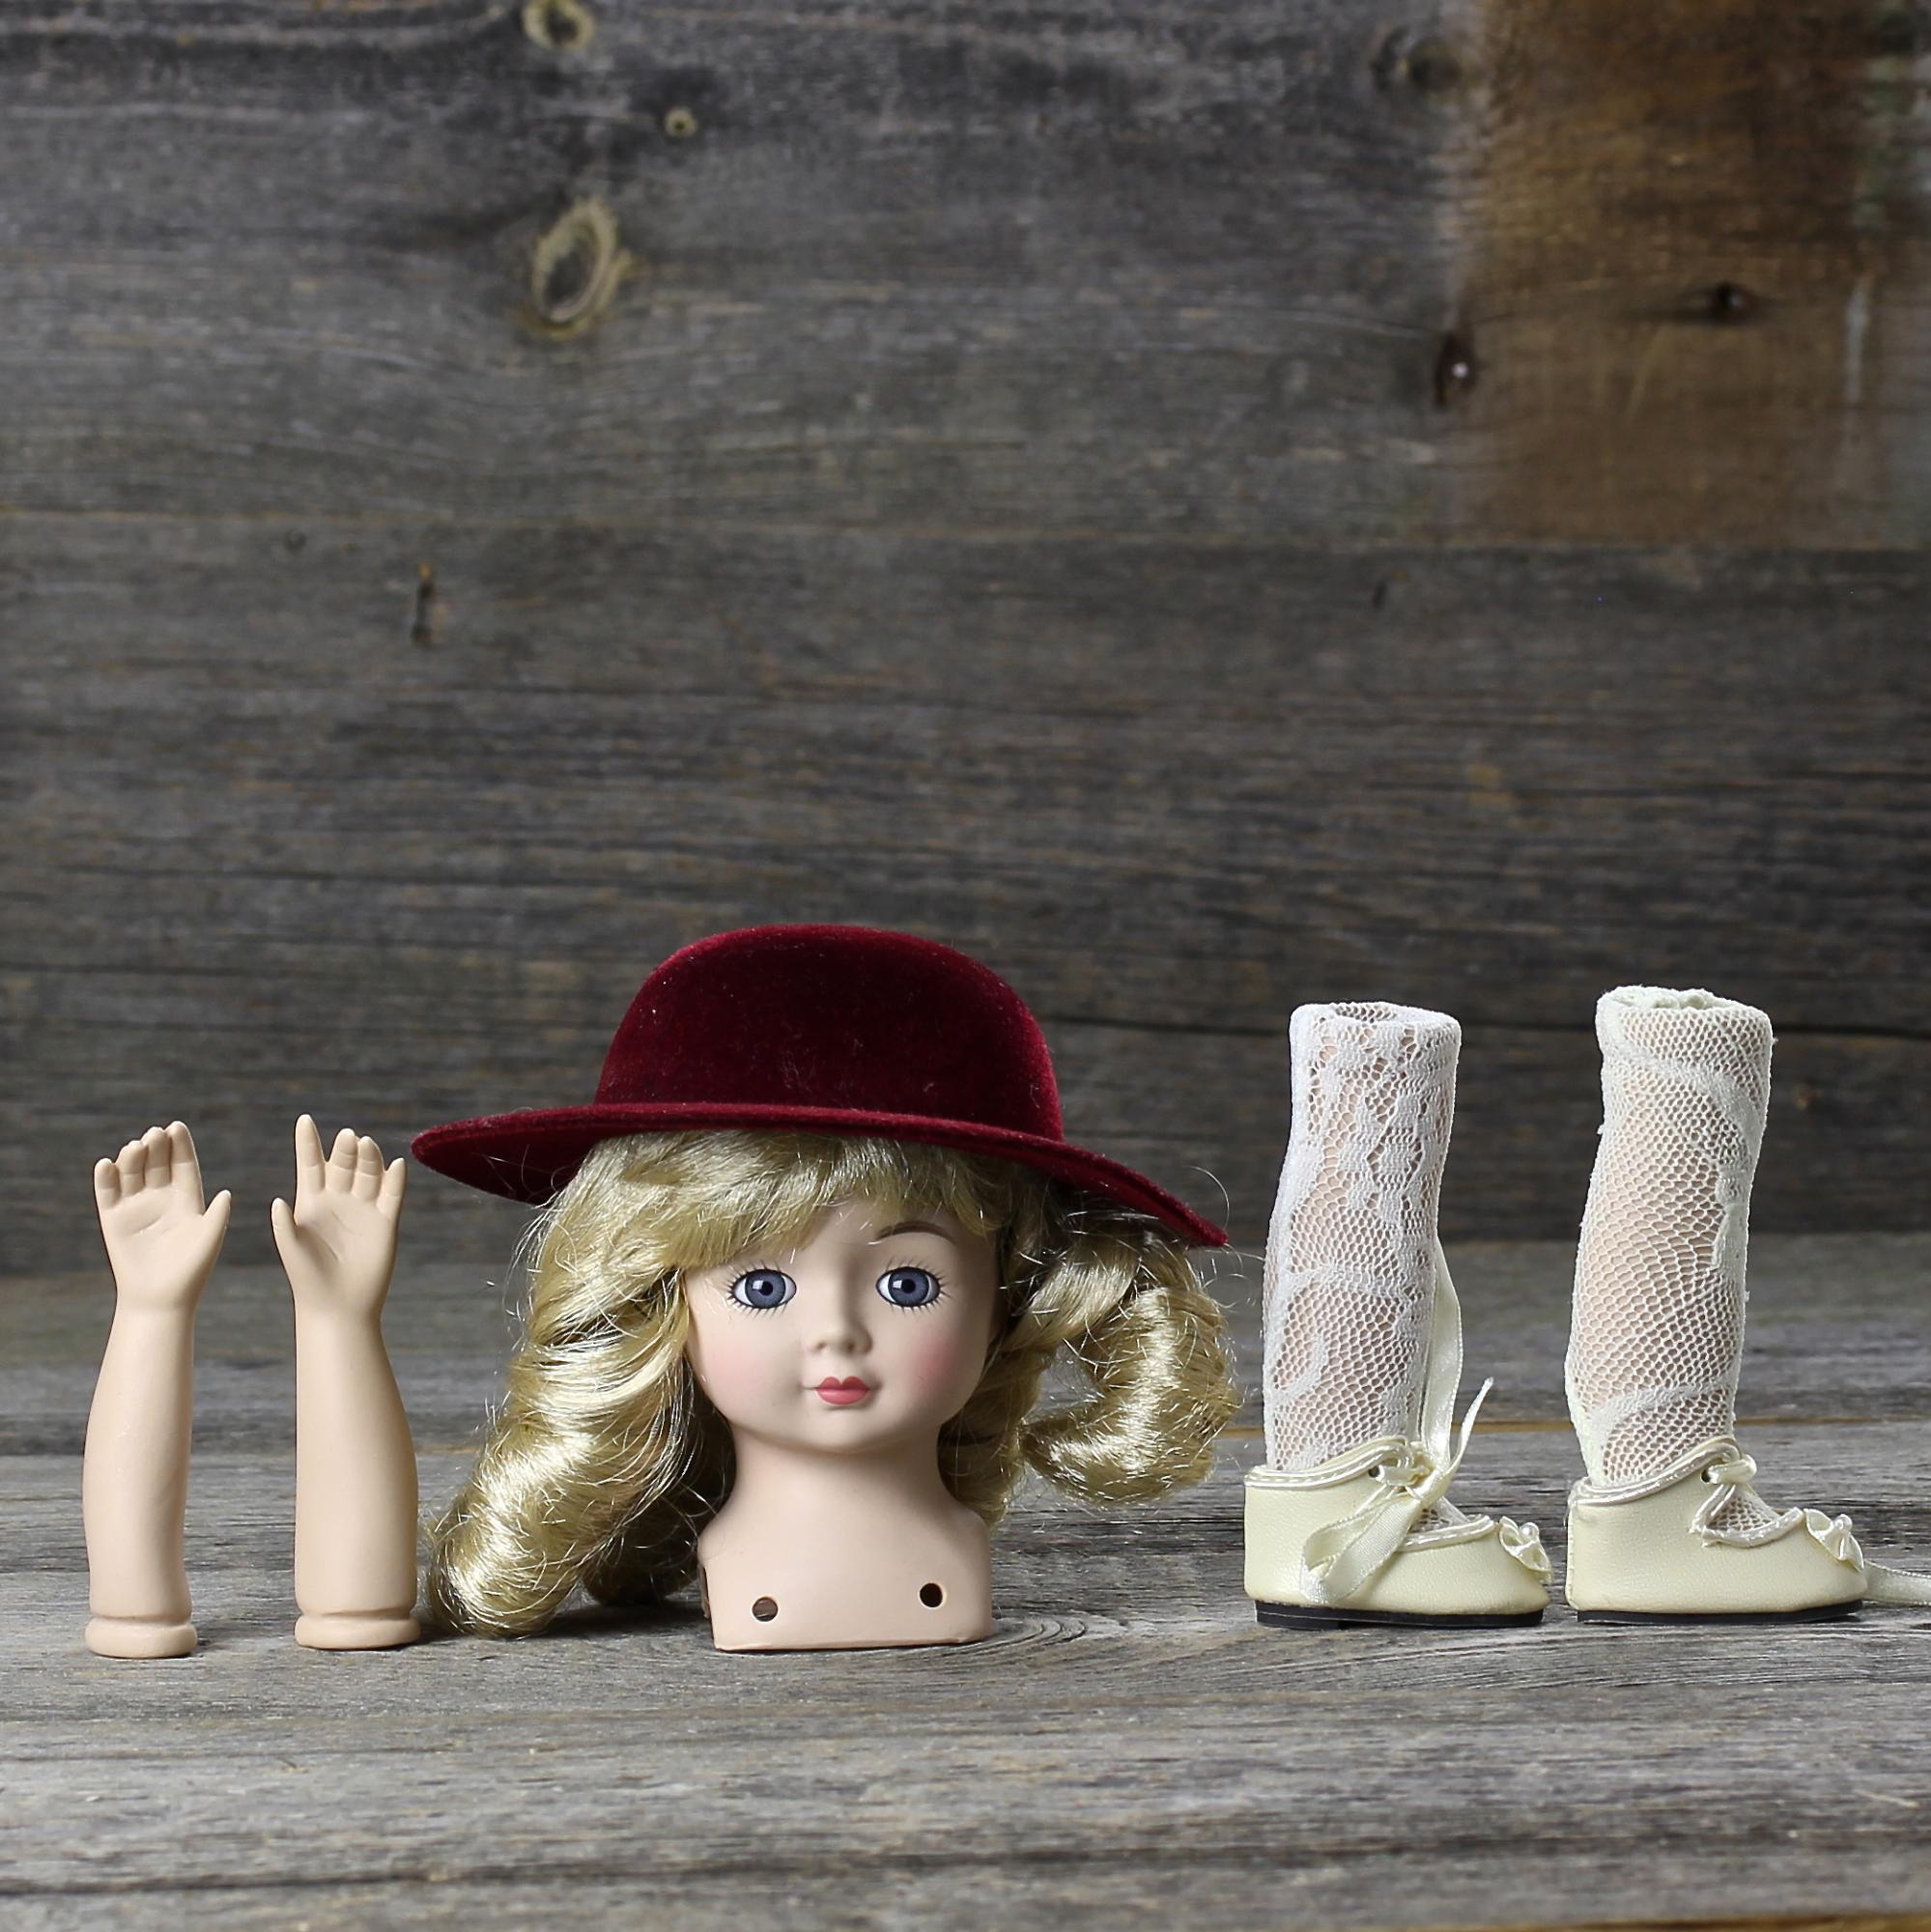 Винтажные детали для куклы с лондонского блошиного рынка Фарфоровый бюст, ручки, ножки в светлых чулках и туфельках, шляпка